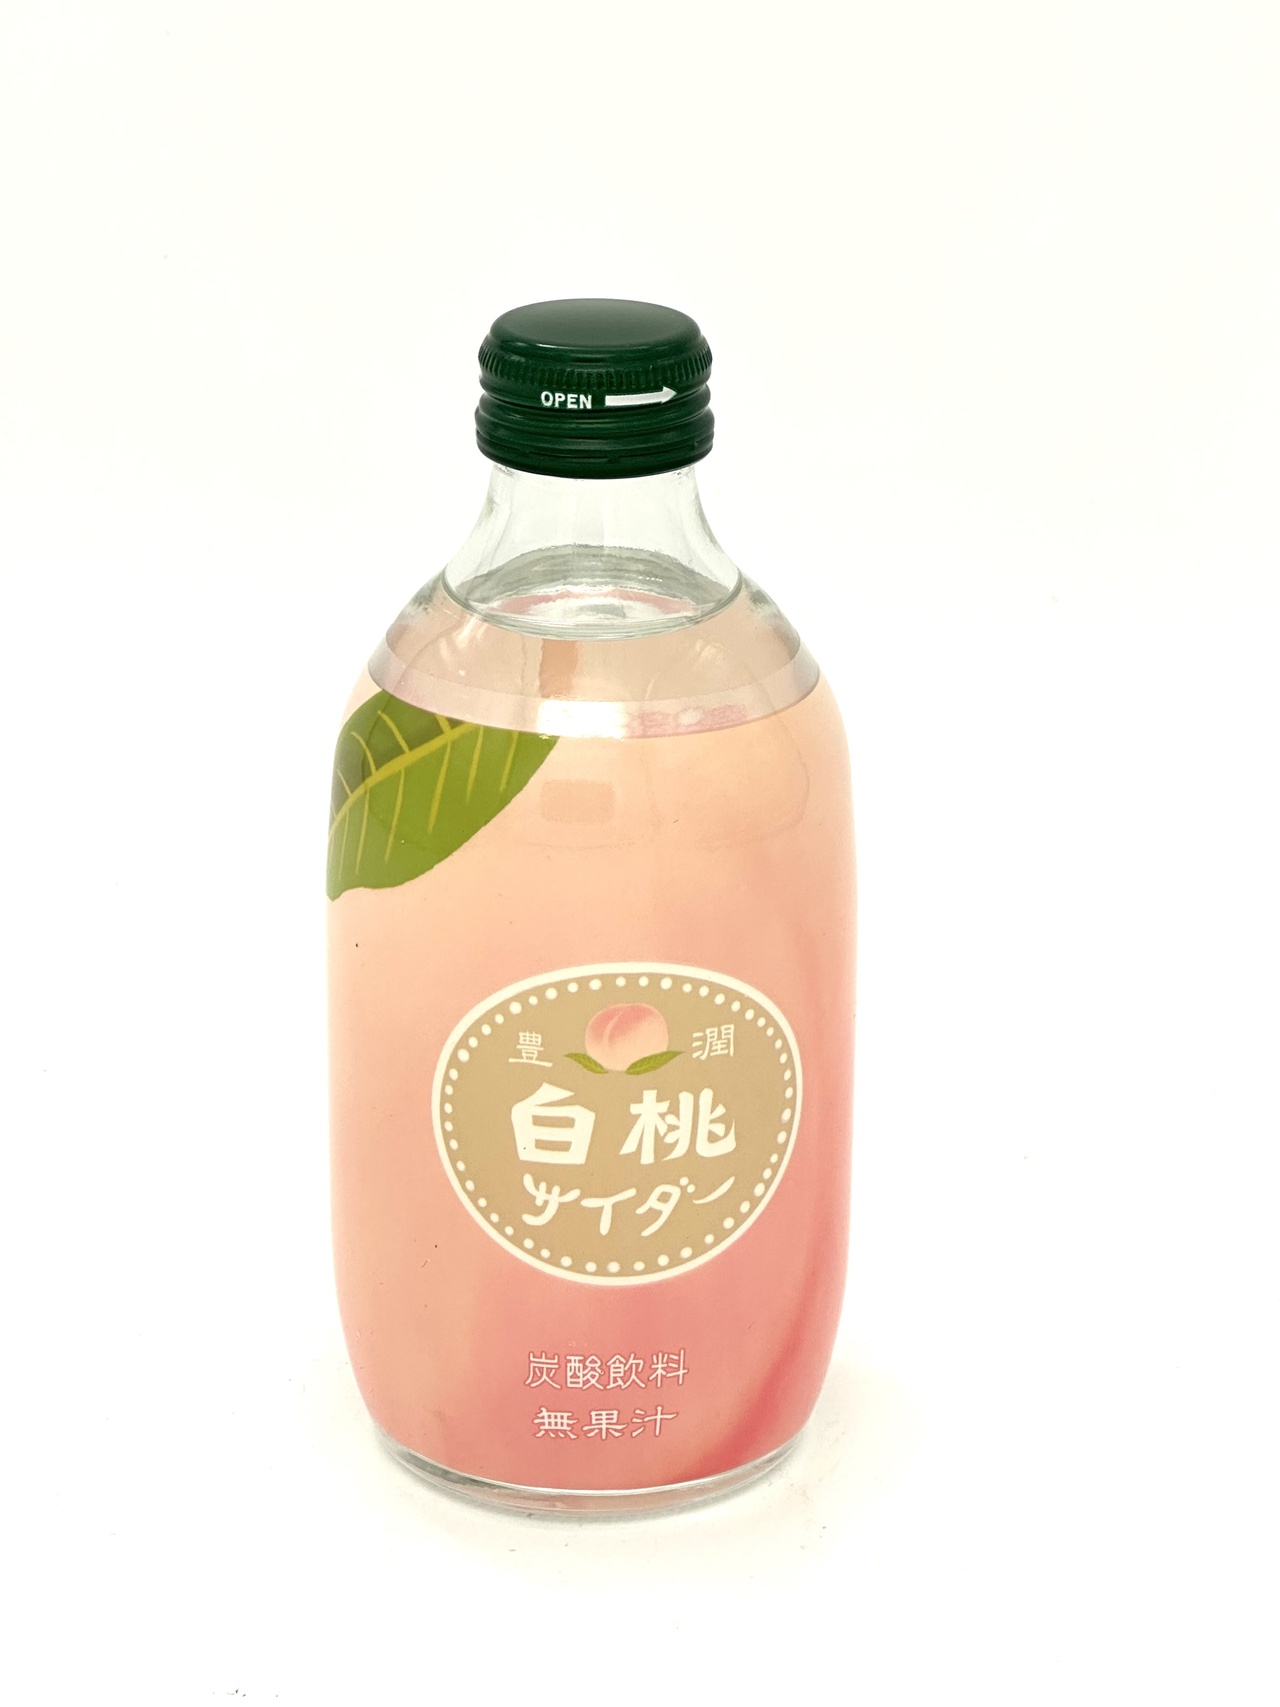 Tomomasu White Peach Cider 300ml 白桃